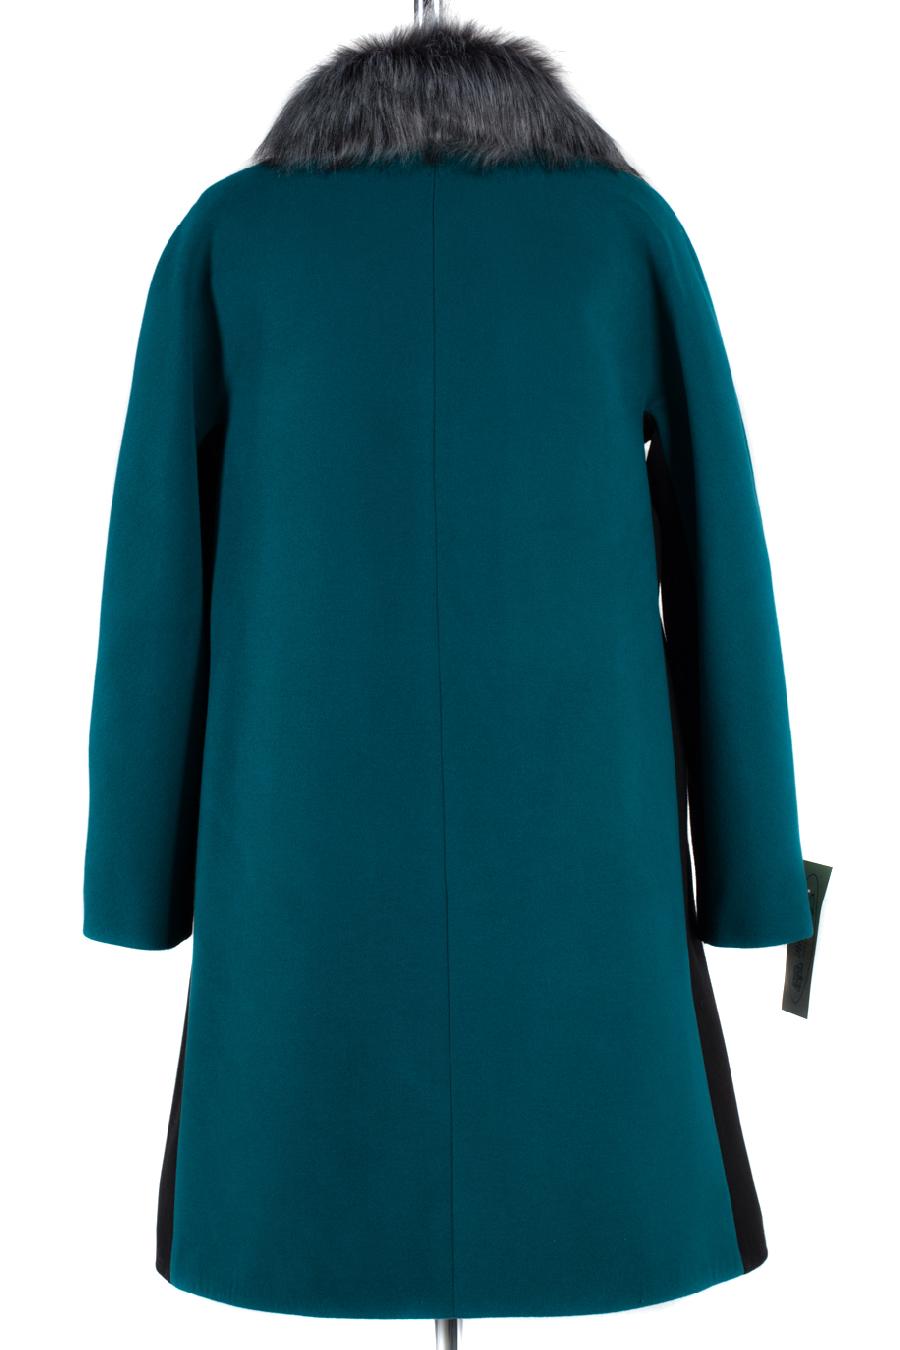 02-1202 Пальто женское утепленное Пальтовая ткань Изумруд-черный